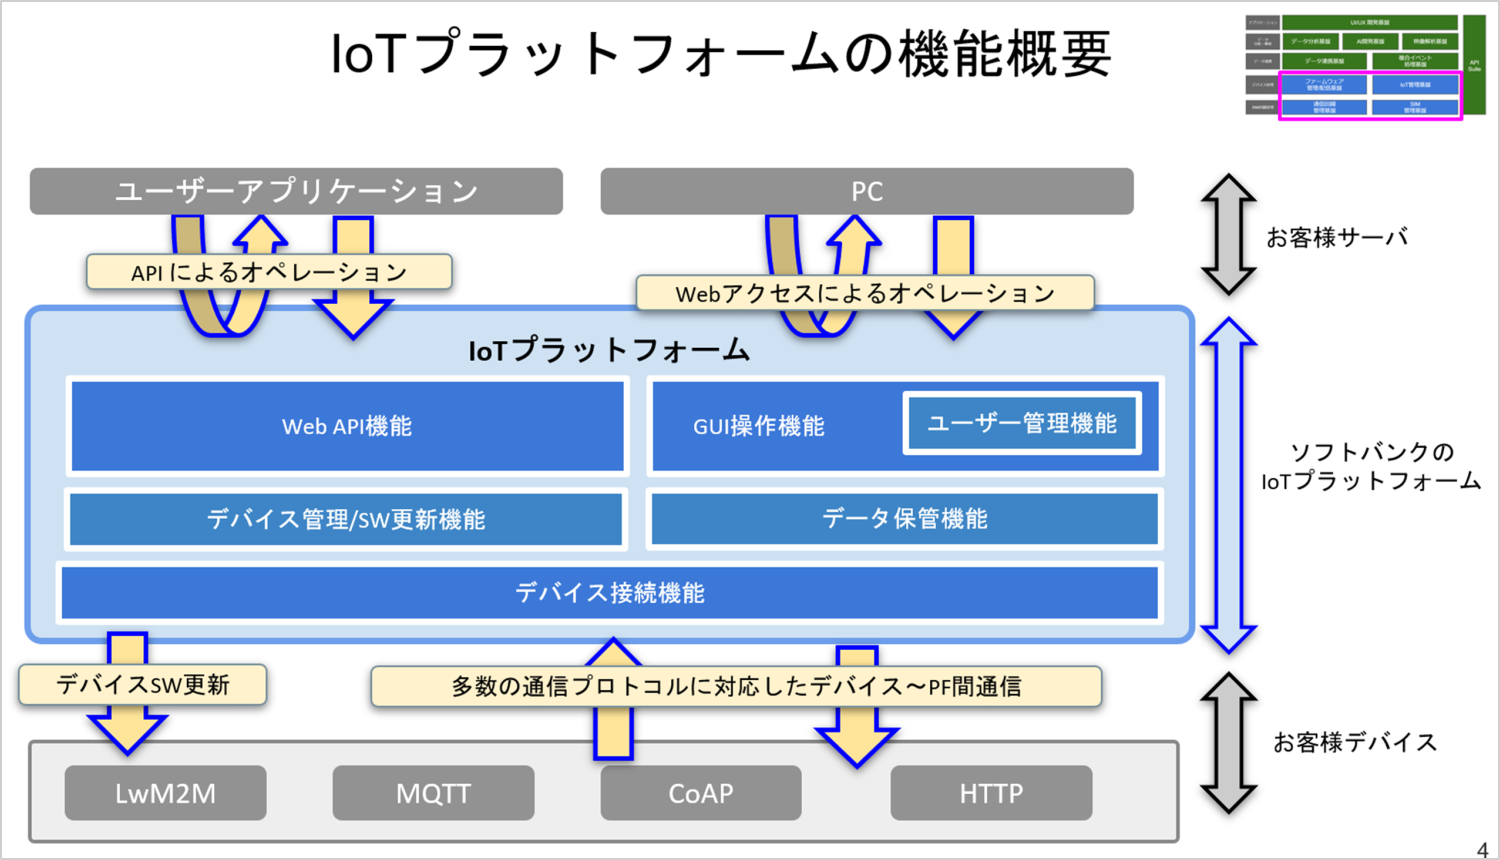 IoTプラットフォームの機能概要の図。お客様サーバとお客様デバイスをソフトバンクIoTプラットフォームが繋いでいる